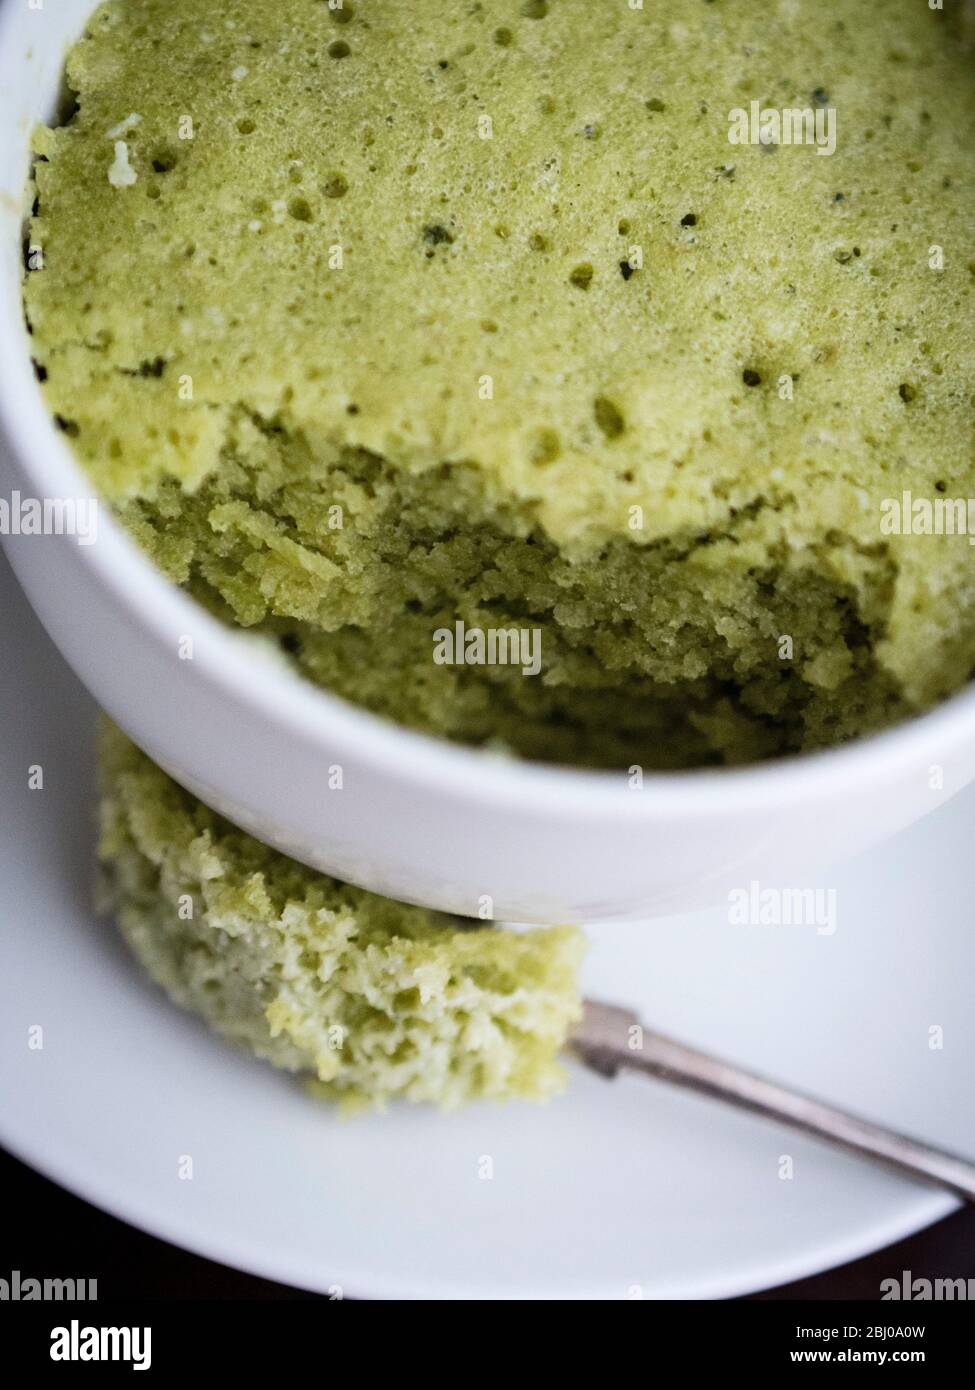 Délicieux gâteau simple composé d'amandes moulues et de thé vert matcha, cuit dans une tasse dans un four à micro-ondes. Banque D'Images